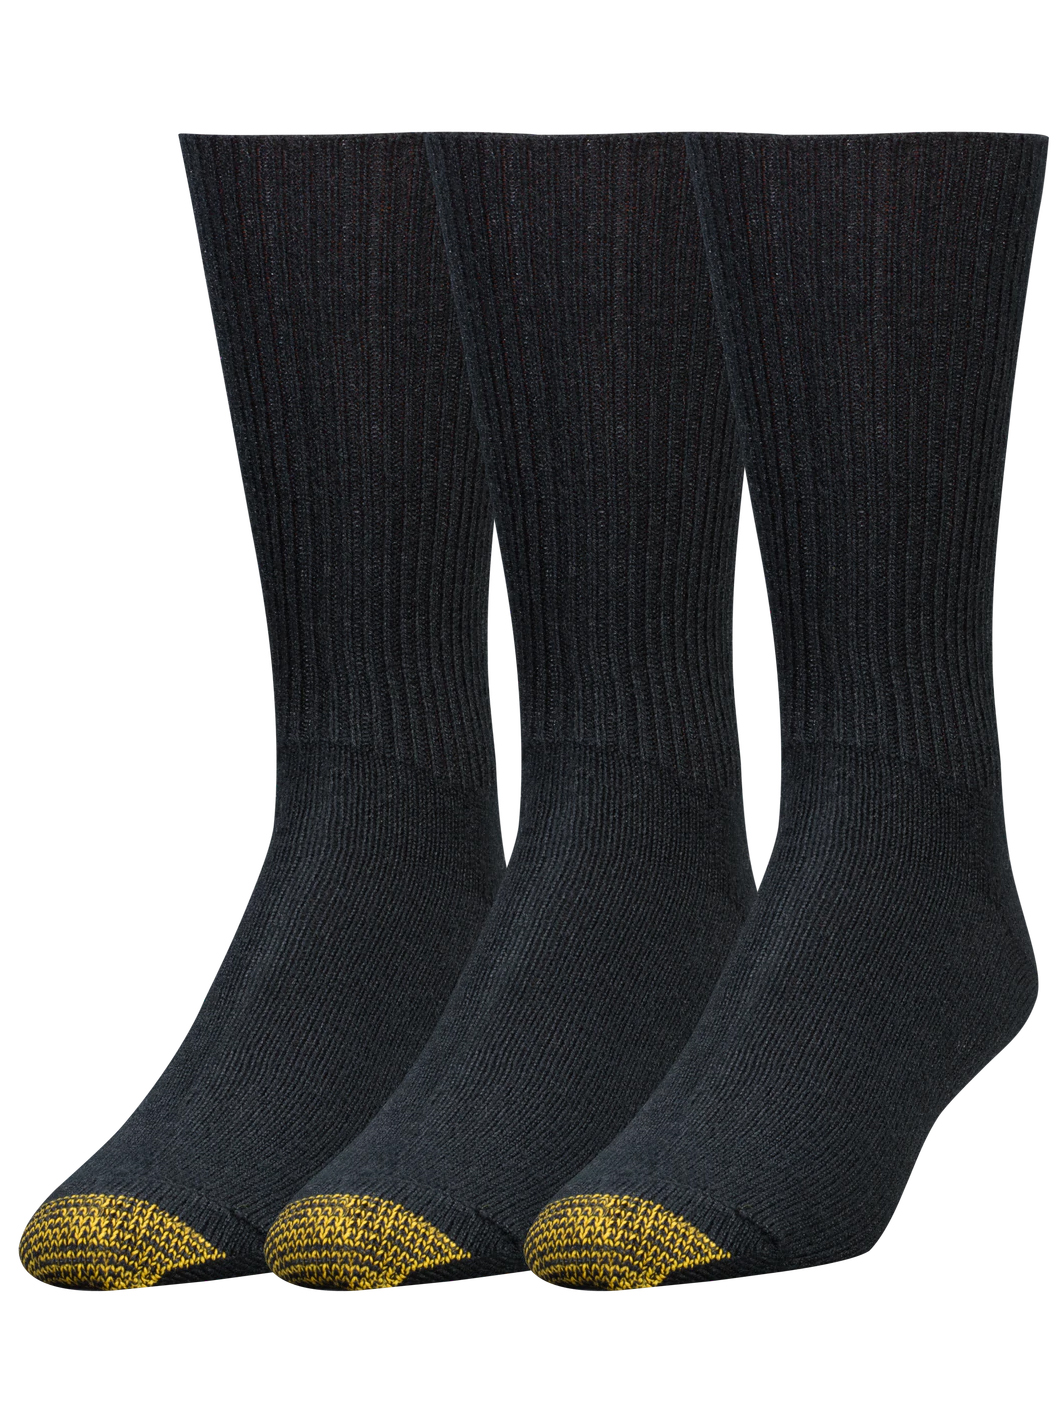 Gold Toe Men's Fluffies 3-Pack Socks 523s | eBay